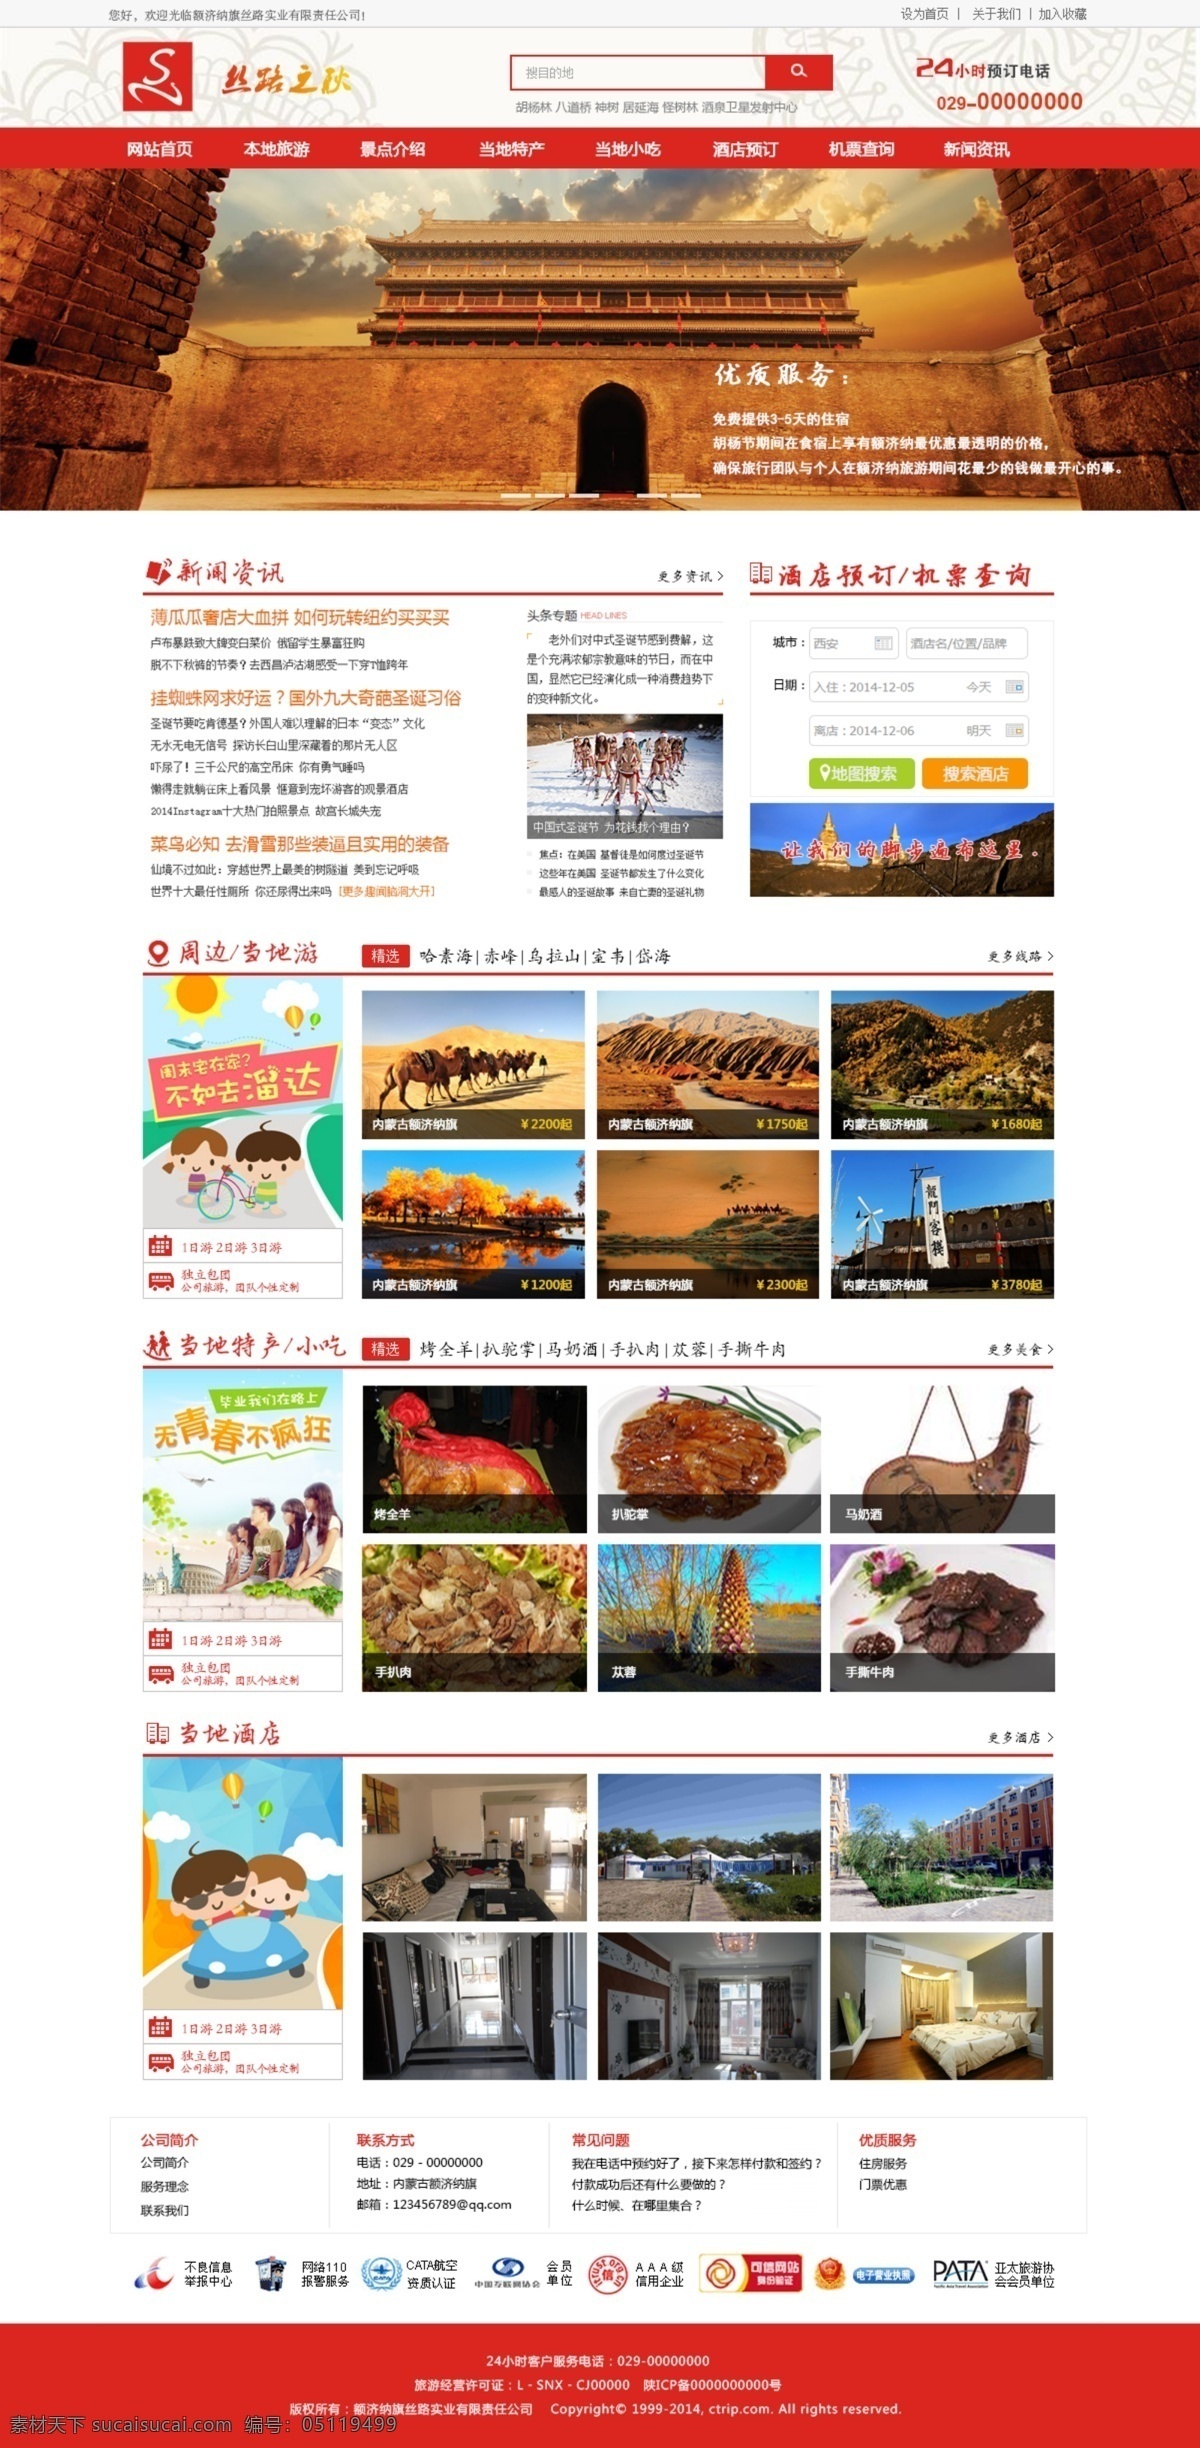 丝路 之秋 旅游网站 网页 原创设计 原创网页设计